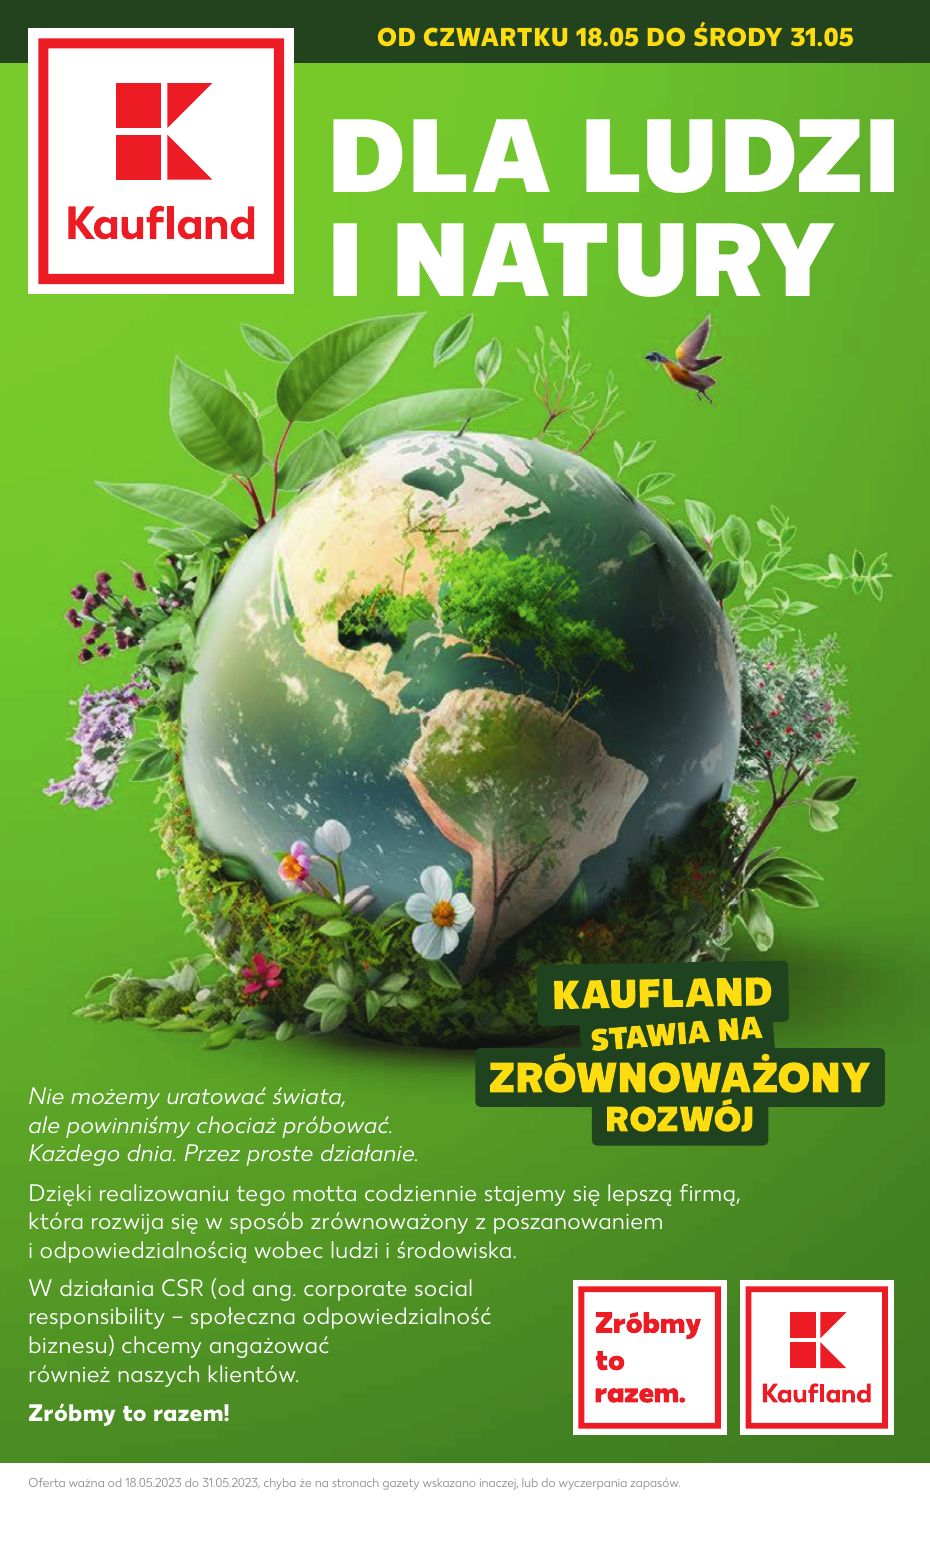 акційний каталог Kaufland – Dla ludzi i natury - Сторінка 1